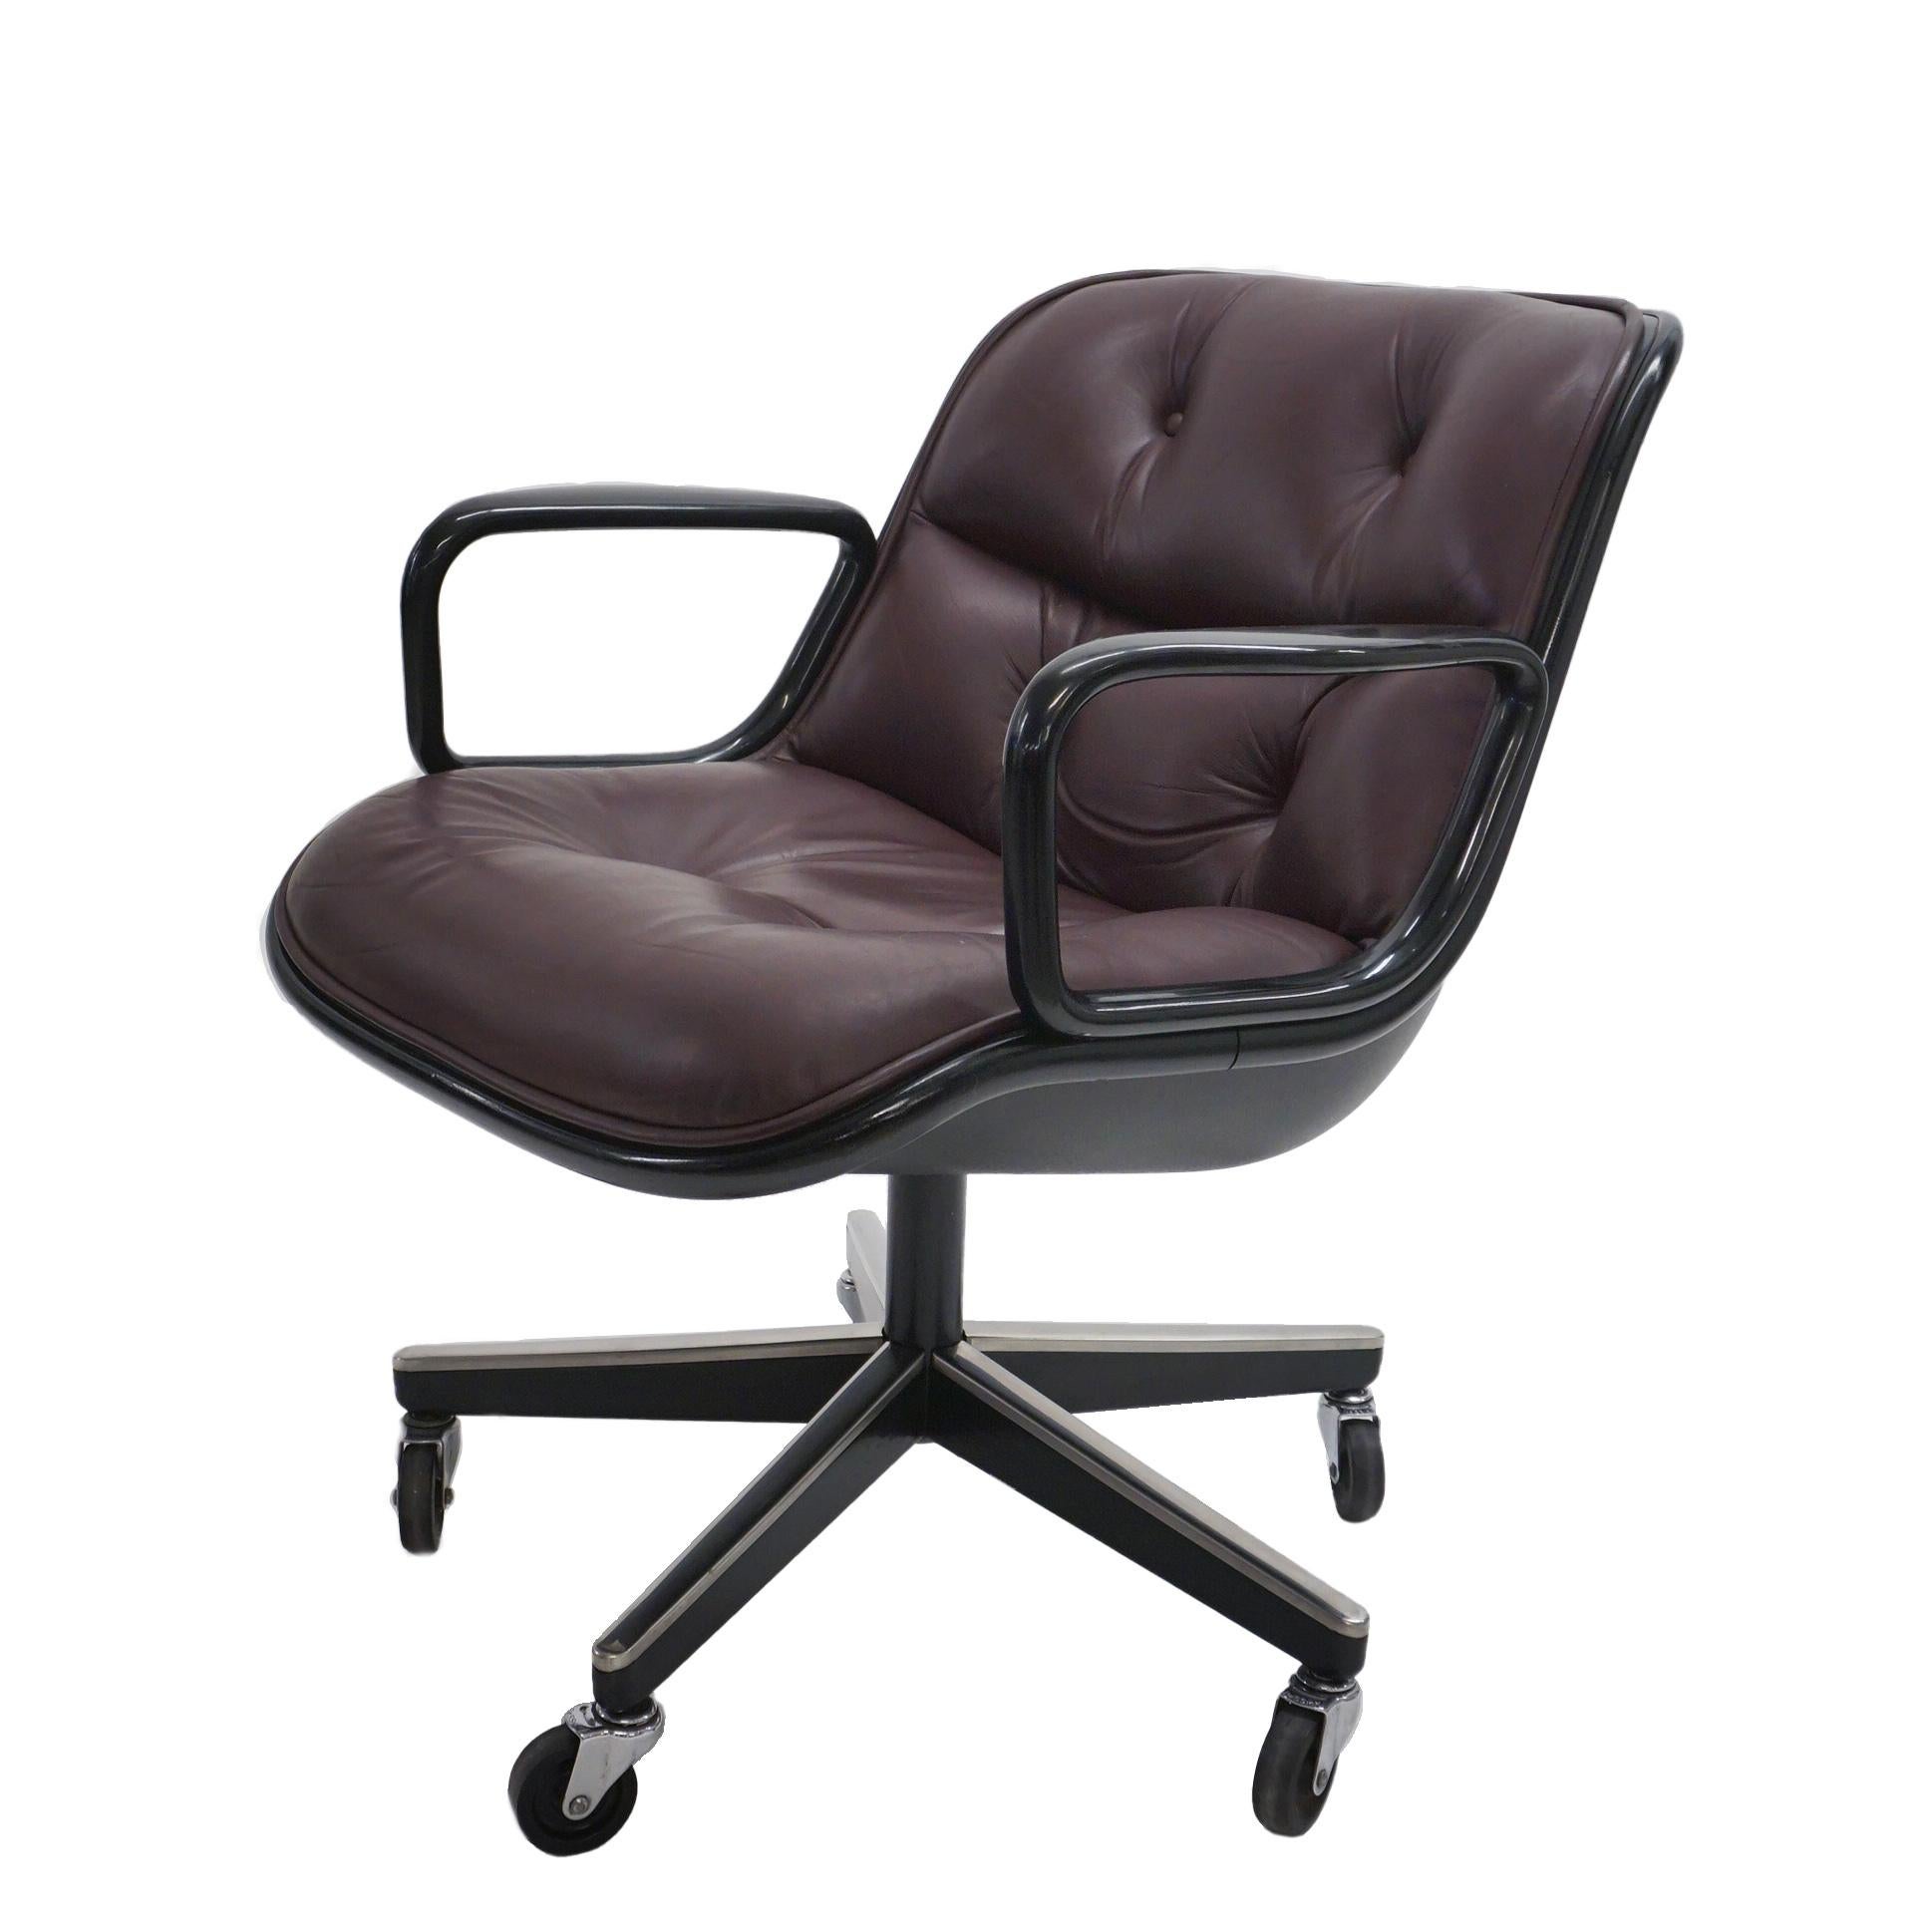 Nous proposons le fauteuil de direction Condit classique dans ce magnifique cuir aubergine, avec une structure en acier noir, en bon état. La sellerie en cuir a été récemment refaite et est en excellent état.

Charles Pollock était un maître du